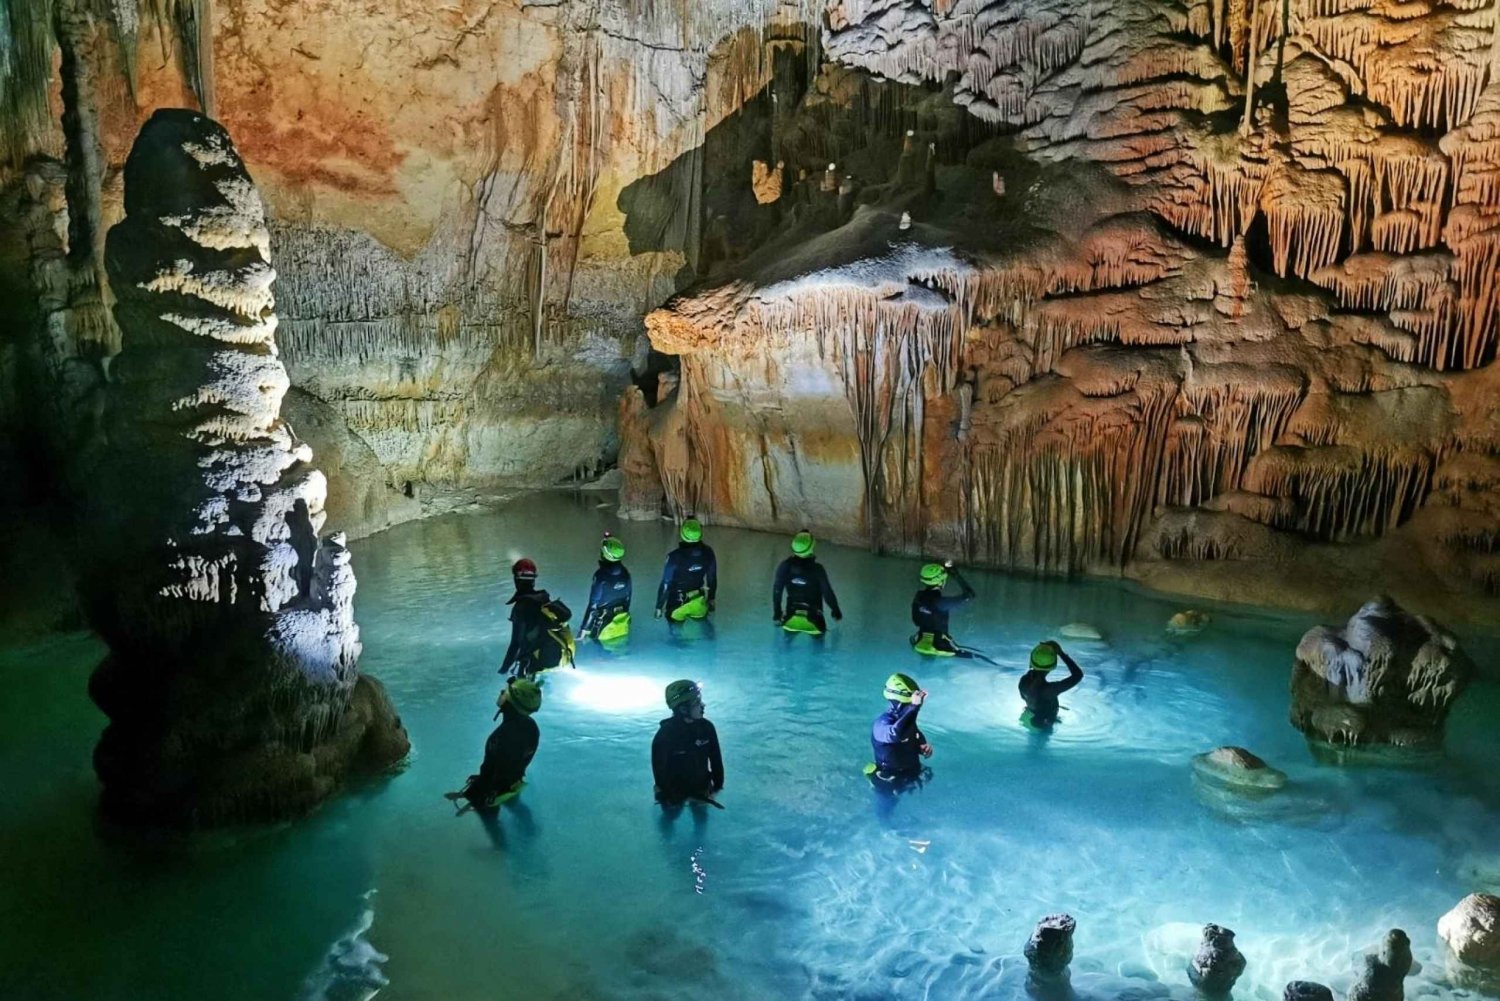 Caverna marítima com rapel (rappel)